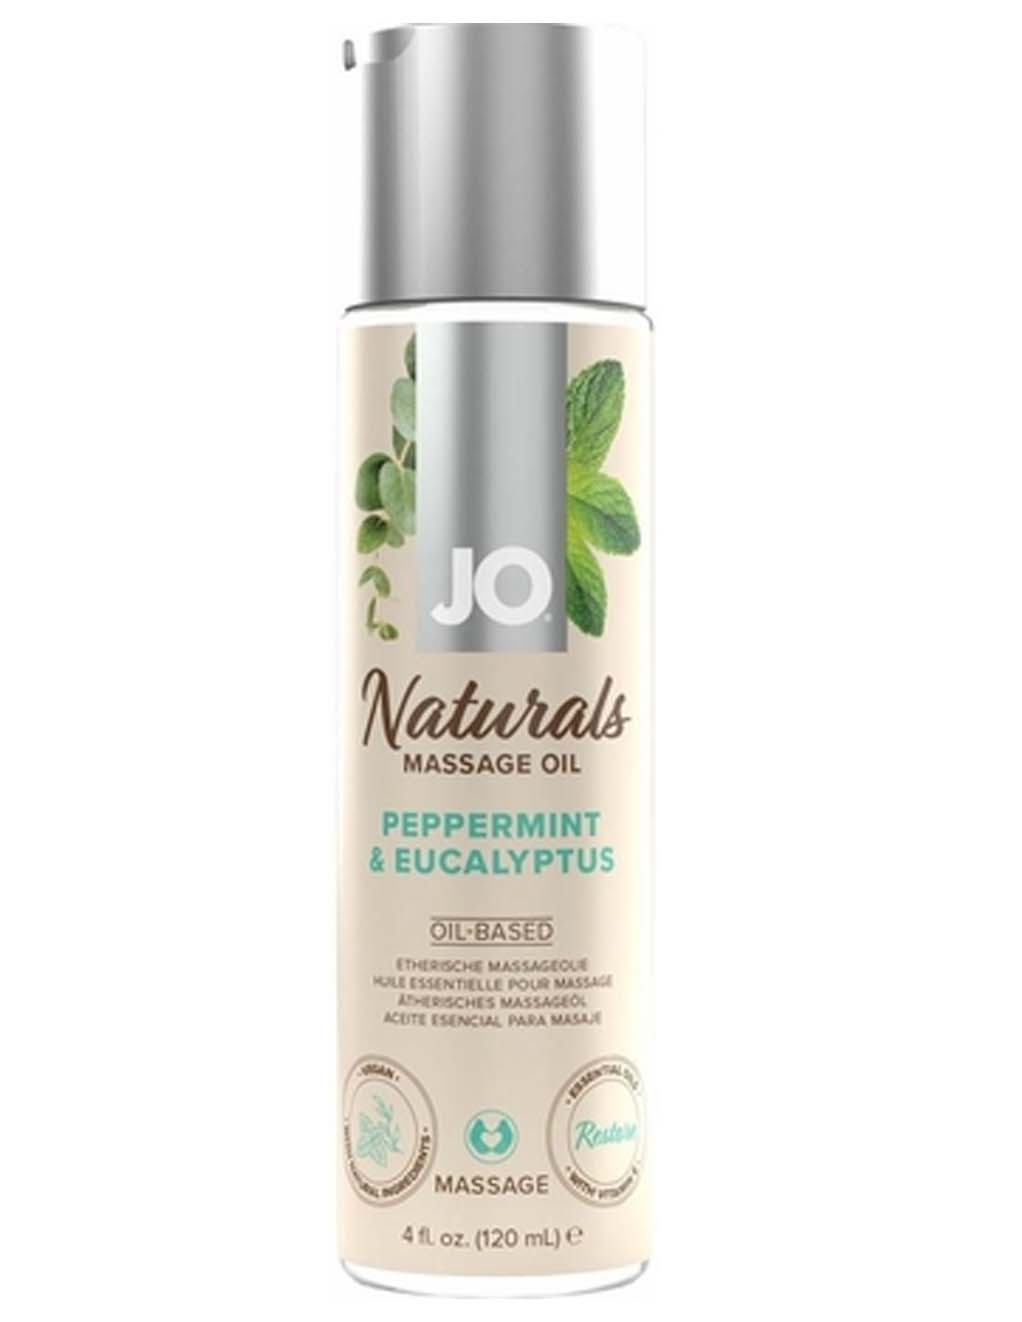 Jo Naturals Massage Oil- Peppermint & Eucalyptus